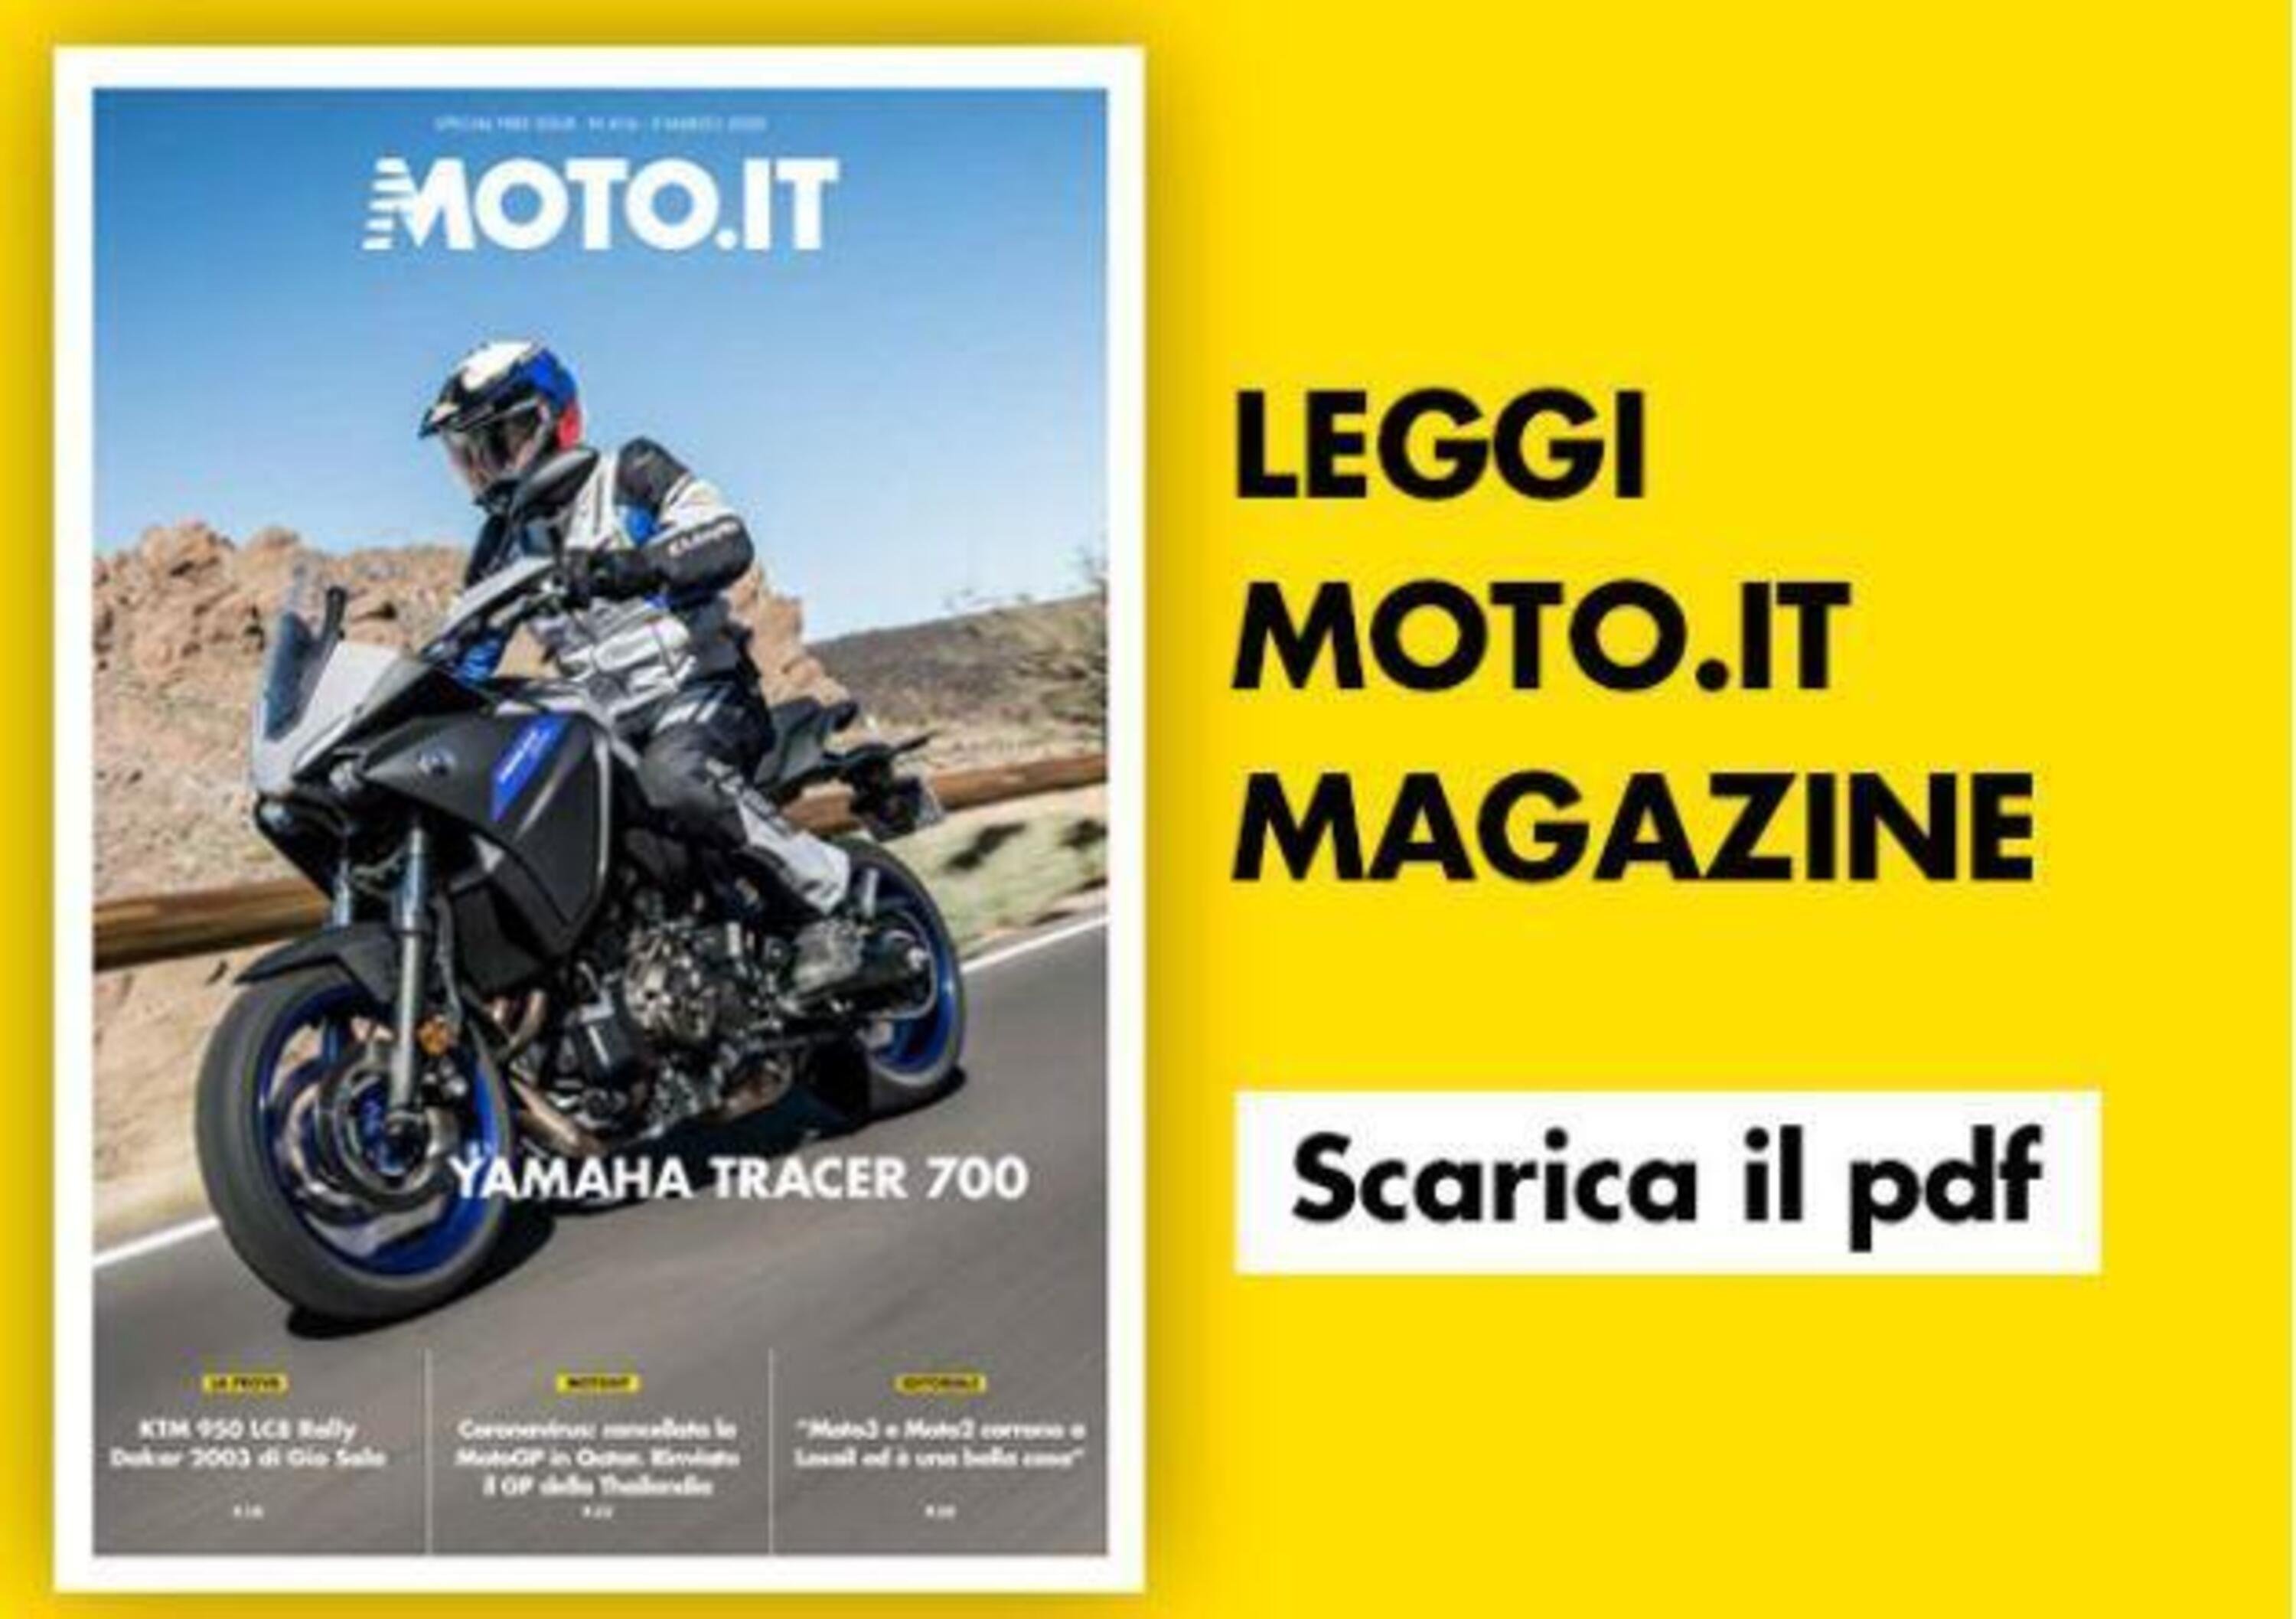 Magazine n&deg; 416, scarica e leggi il meglio di Moto.it 